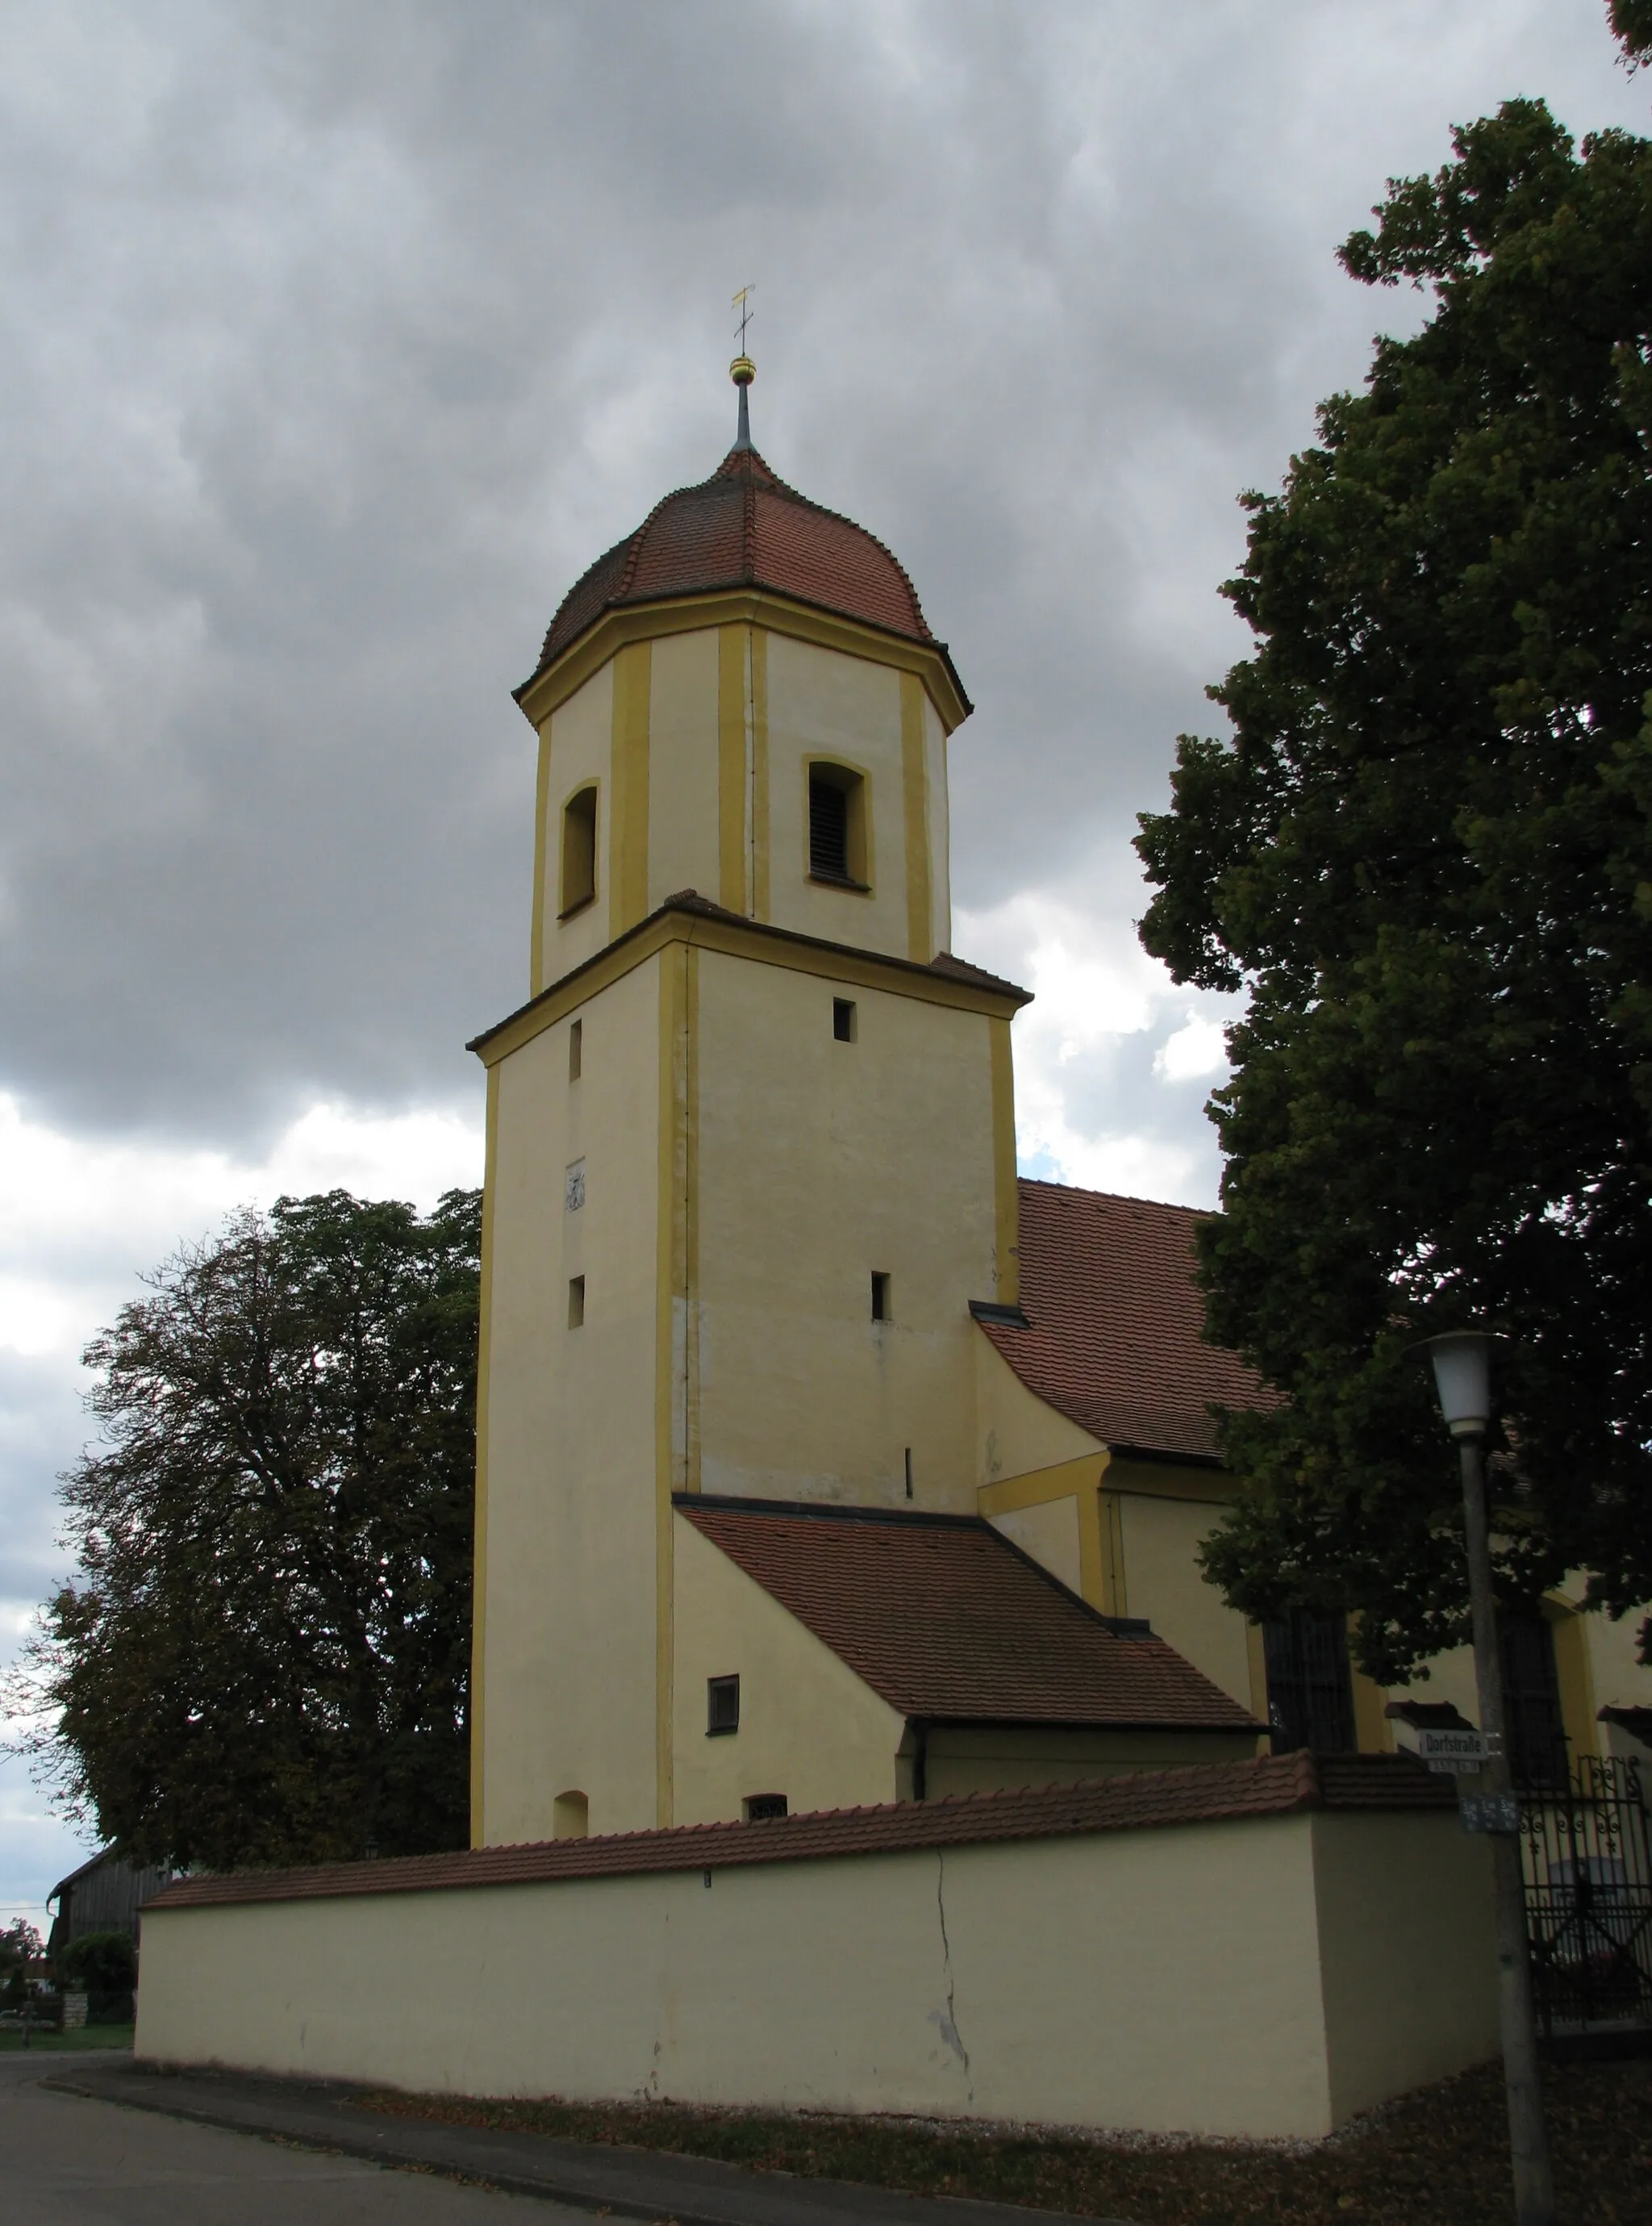 Photo showing: Esselberg, Ortsteil der Stadt Greding im mittelfränkischen Landkreis Roth in Bayern, Kath. Filialkirche St. Nikolaus